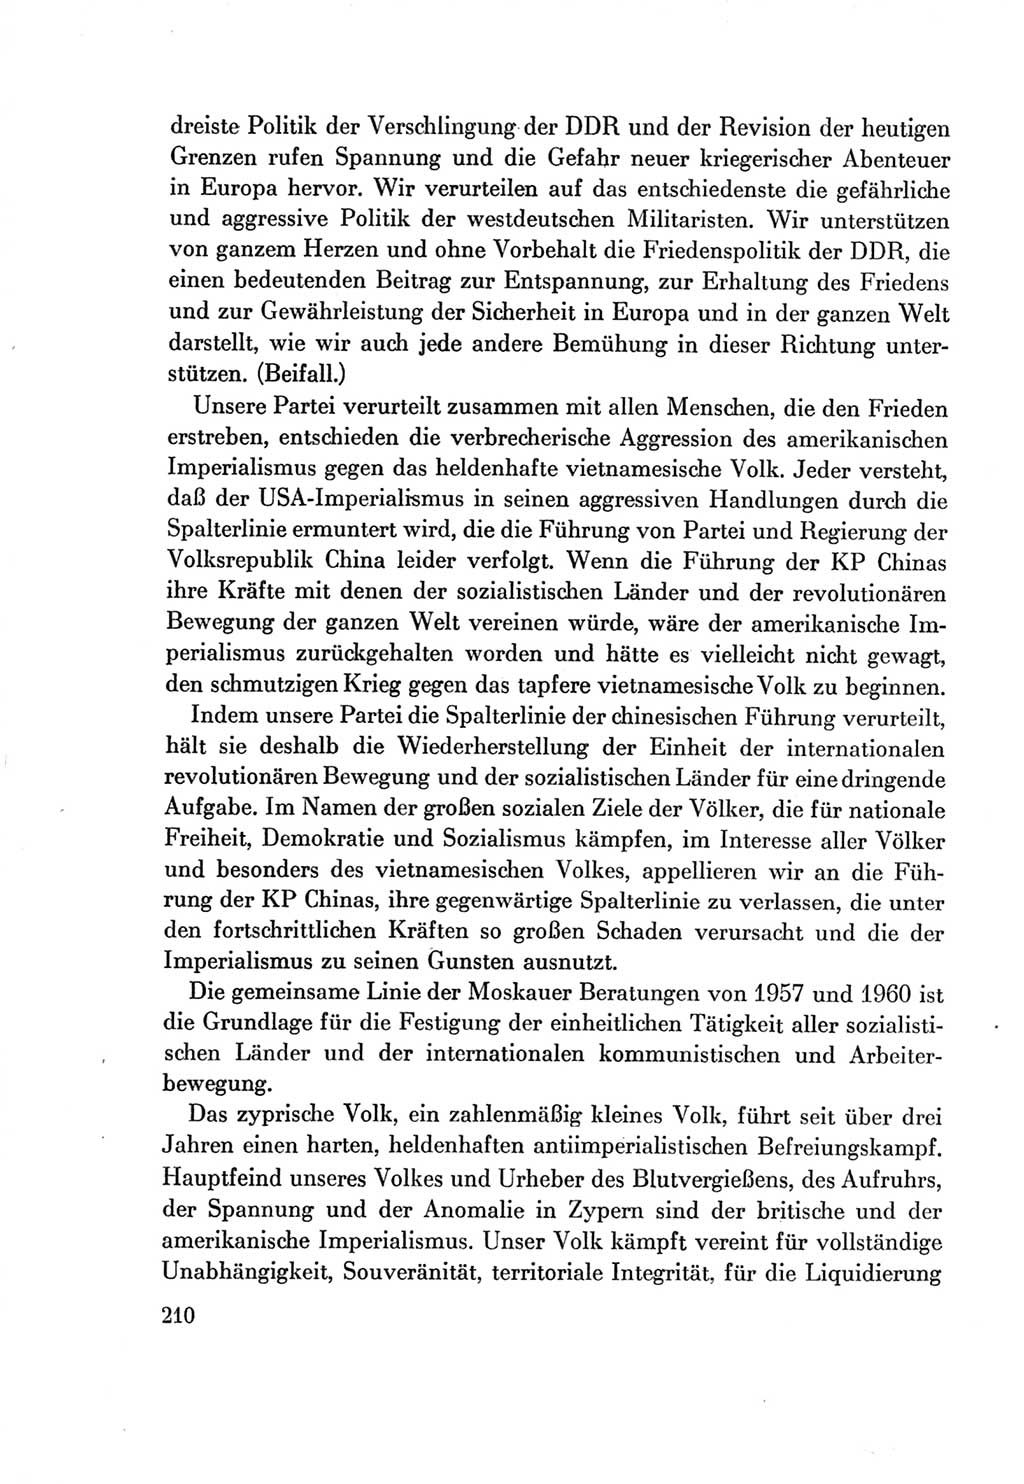 Protokoll der Verhandlungen des Ⅶ. Parteitages der Sozialistischen Einheitspartei Deutschlands (SED) [Deutsche Demokratische Republik (DDR)] 1967, Band Ⅱ, Seite 210 (Prot. Verh. Ⅶ. PT SED DDR 1967, Bd. Ⅱ, S. 210)